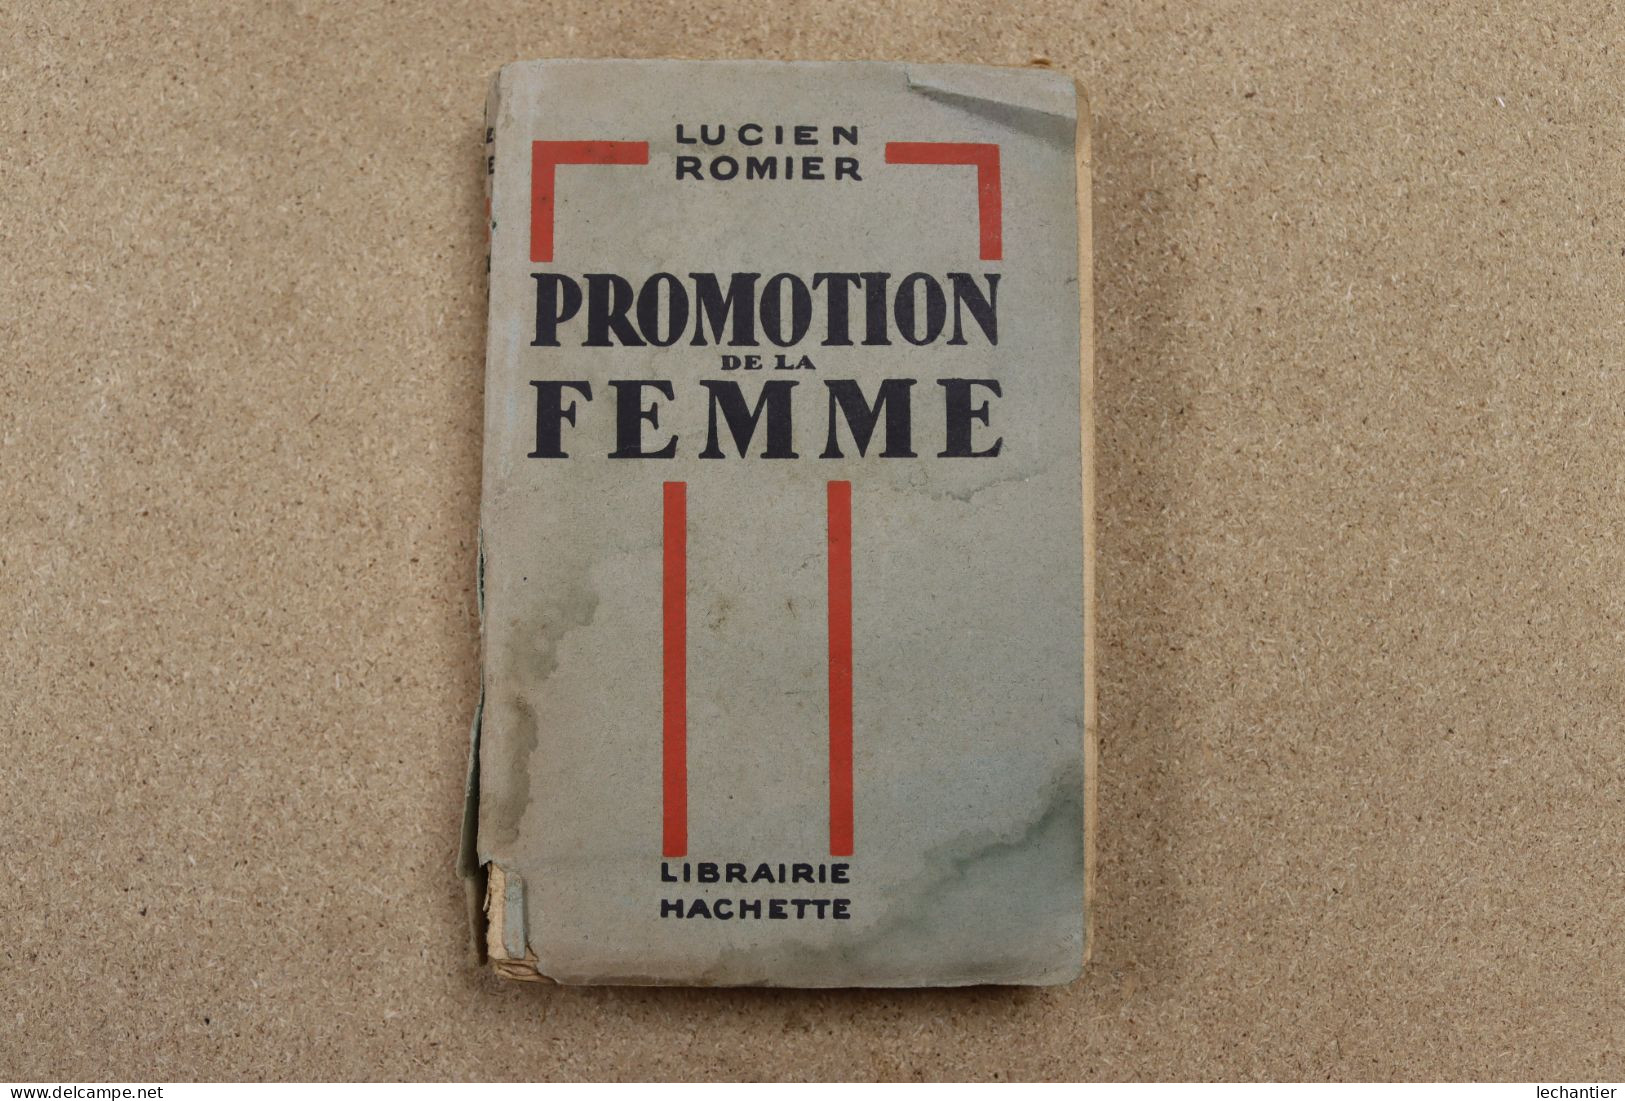 Promotion De La Femme - Lucien Romier - Hachette 1930 , 250 Pages 12,5X19 - Soziologie